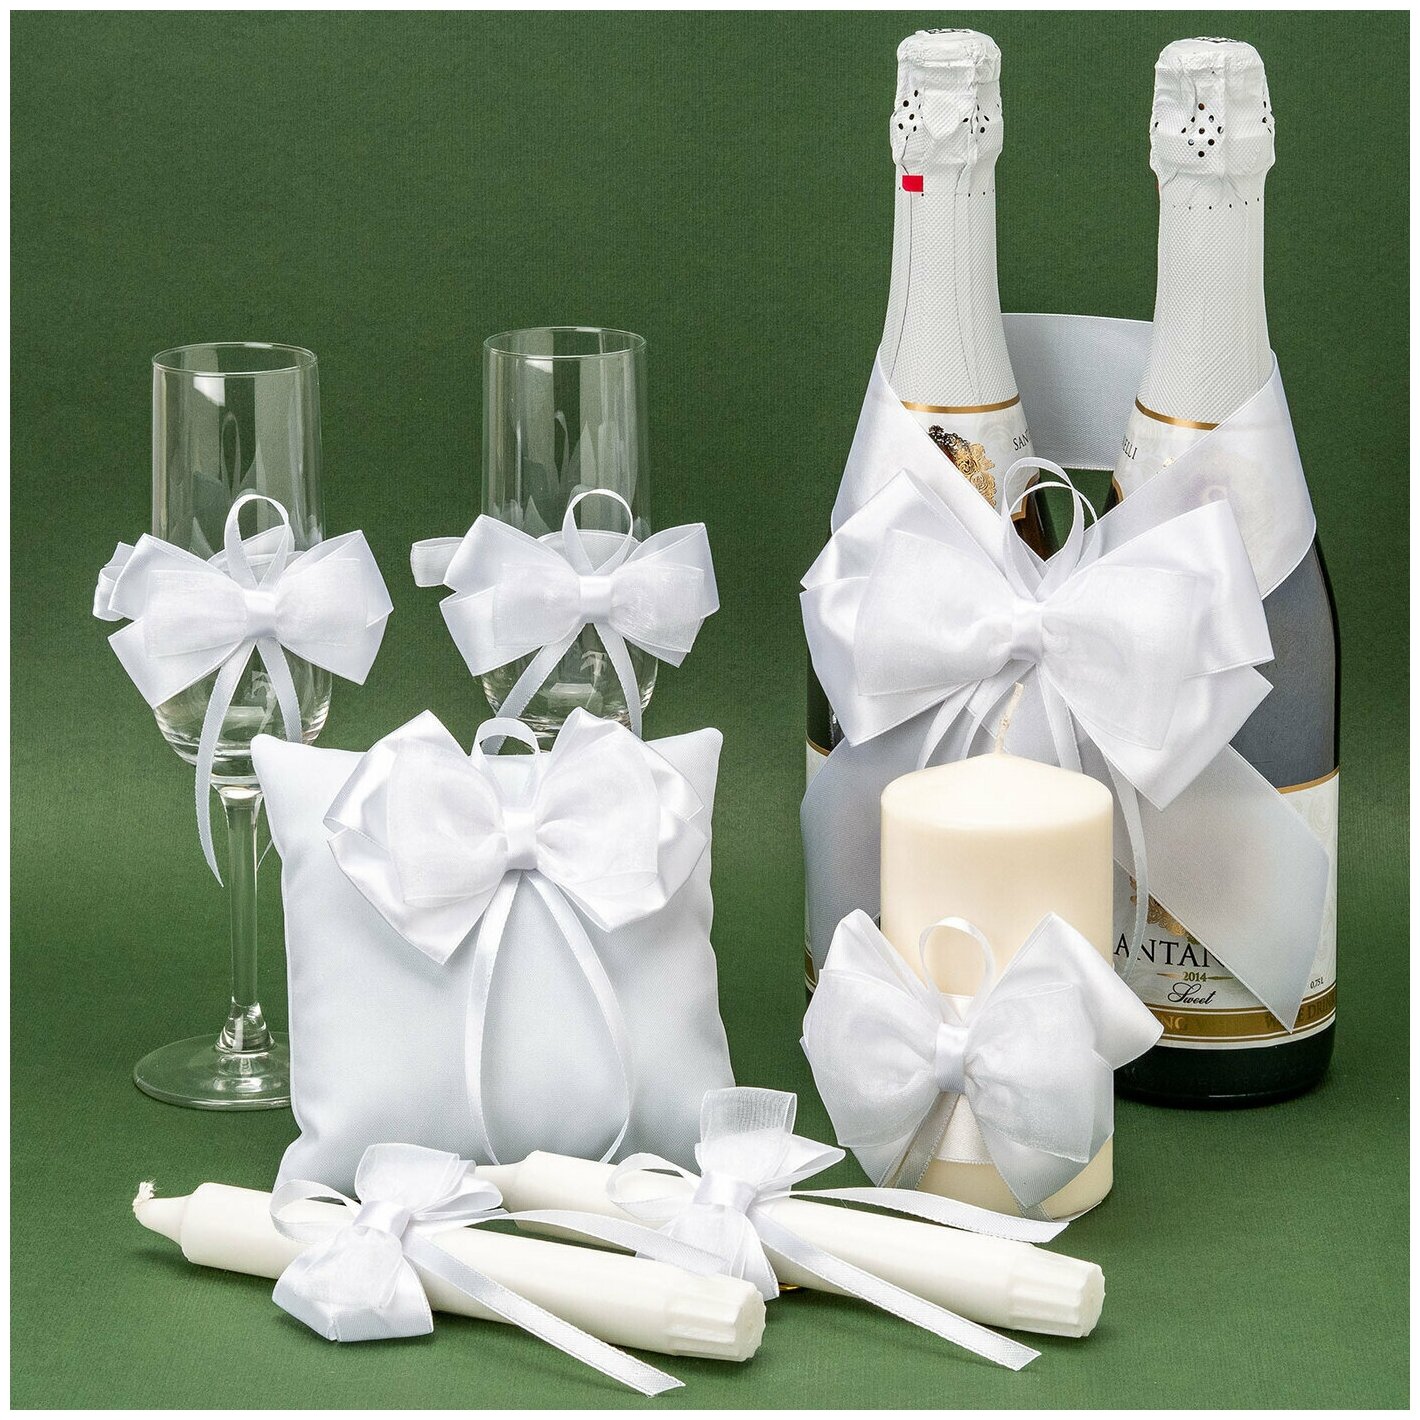 Комплект из 7 предметов для свадебного декора бракосочетания "Белые банты" с атласными бантами белоснежного цвета и тонких ленточек